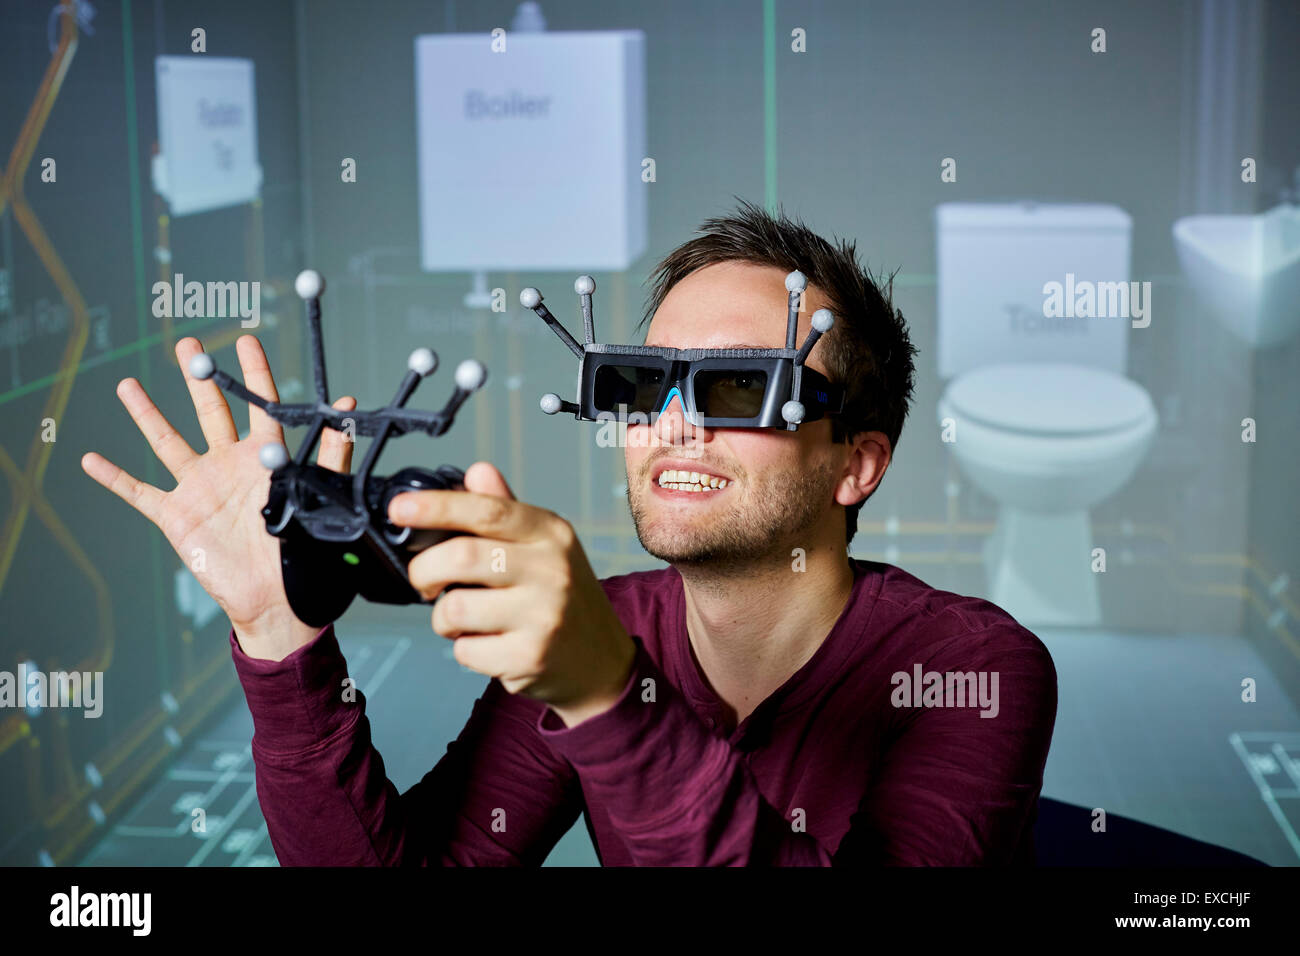 La realidad aumentada hombre jugando con gafas y auricular Foto de stock